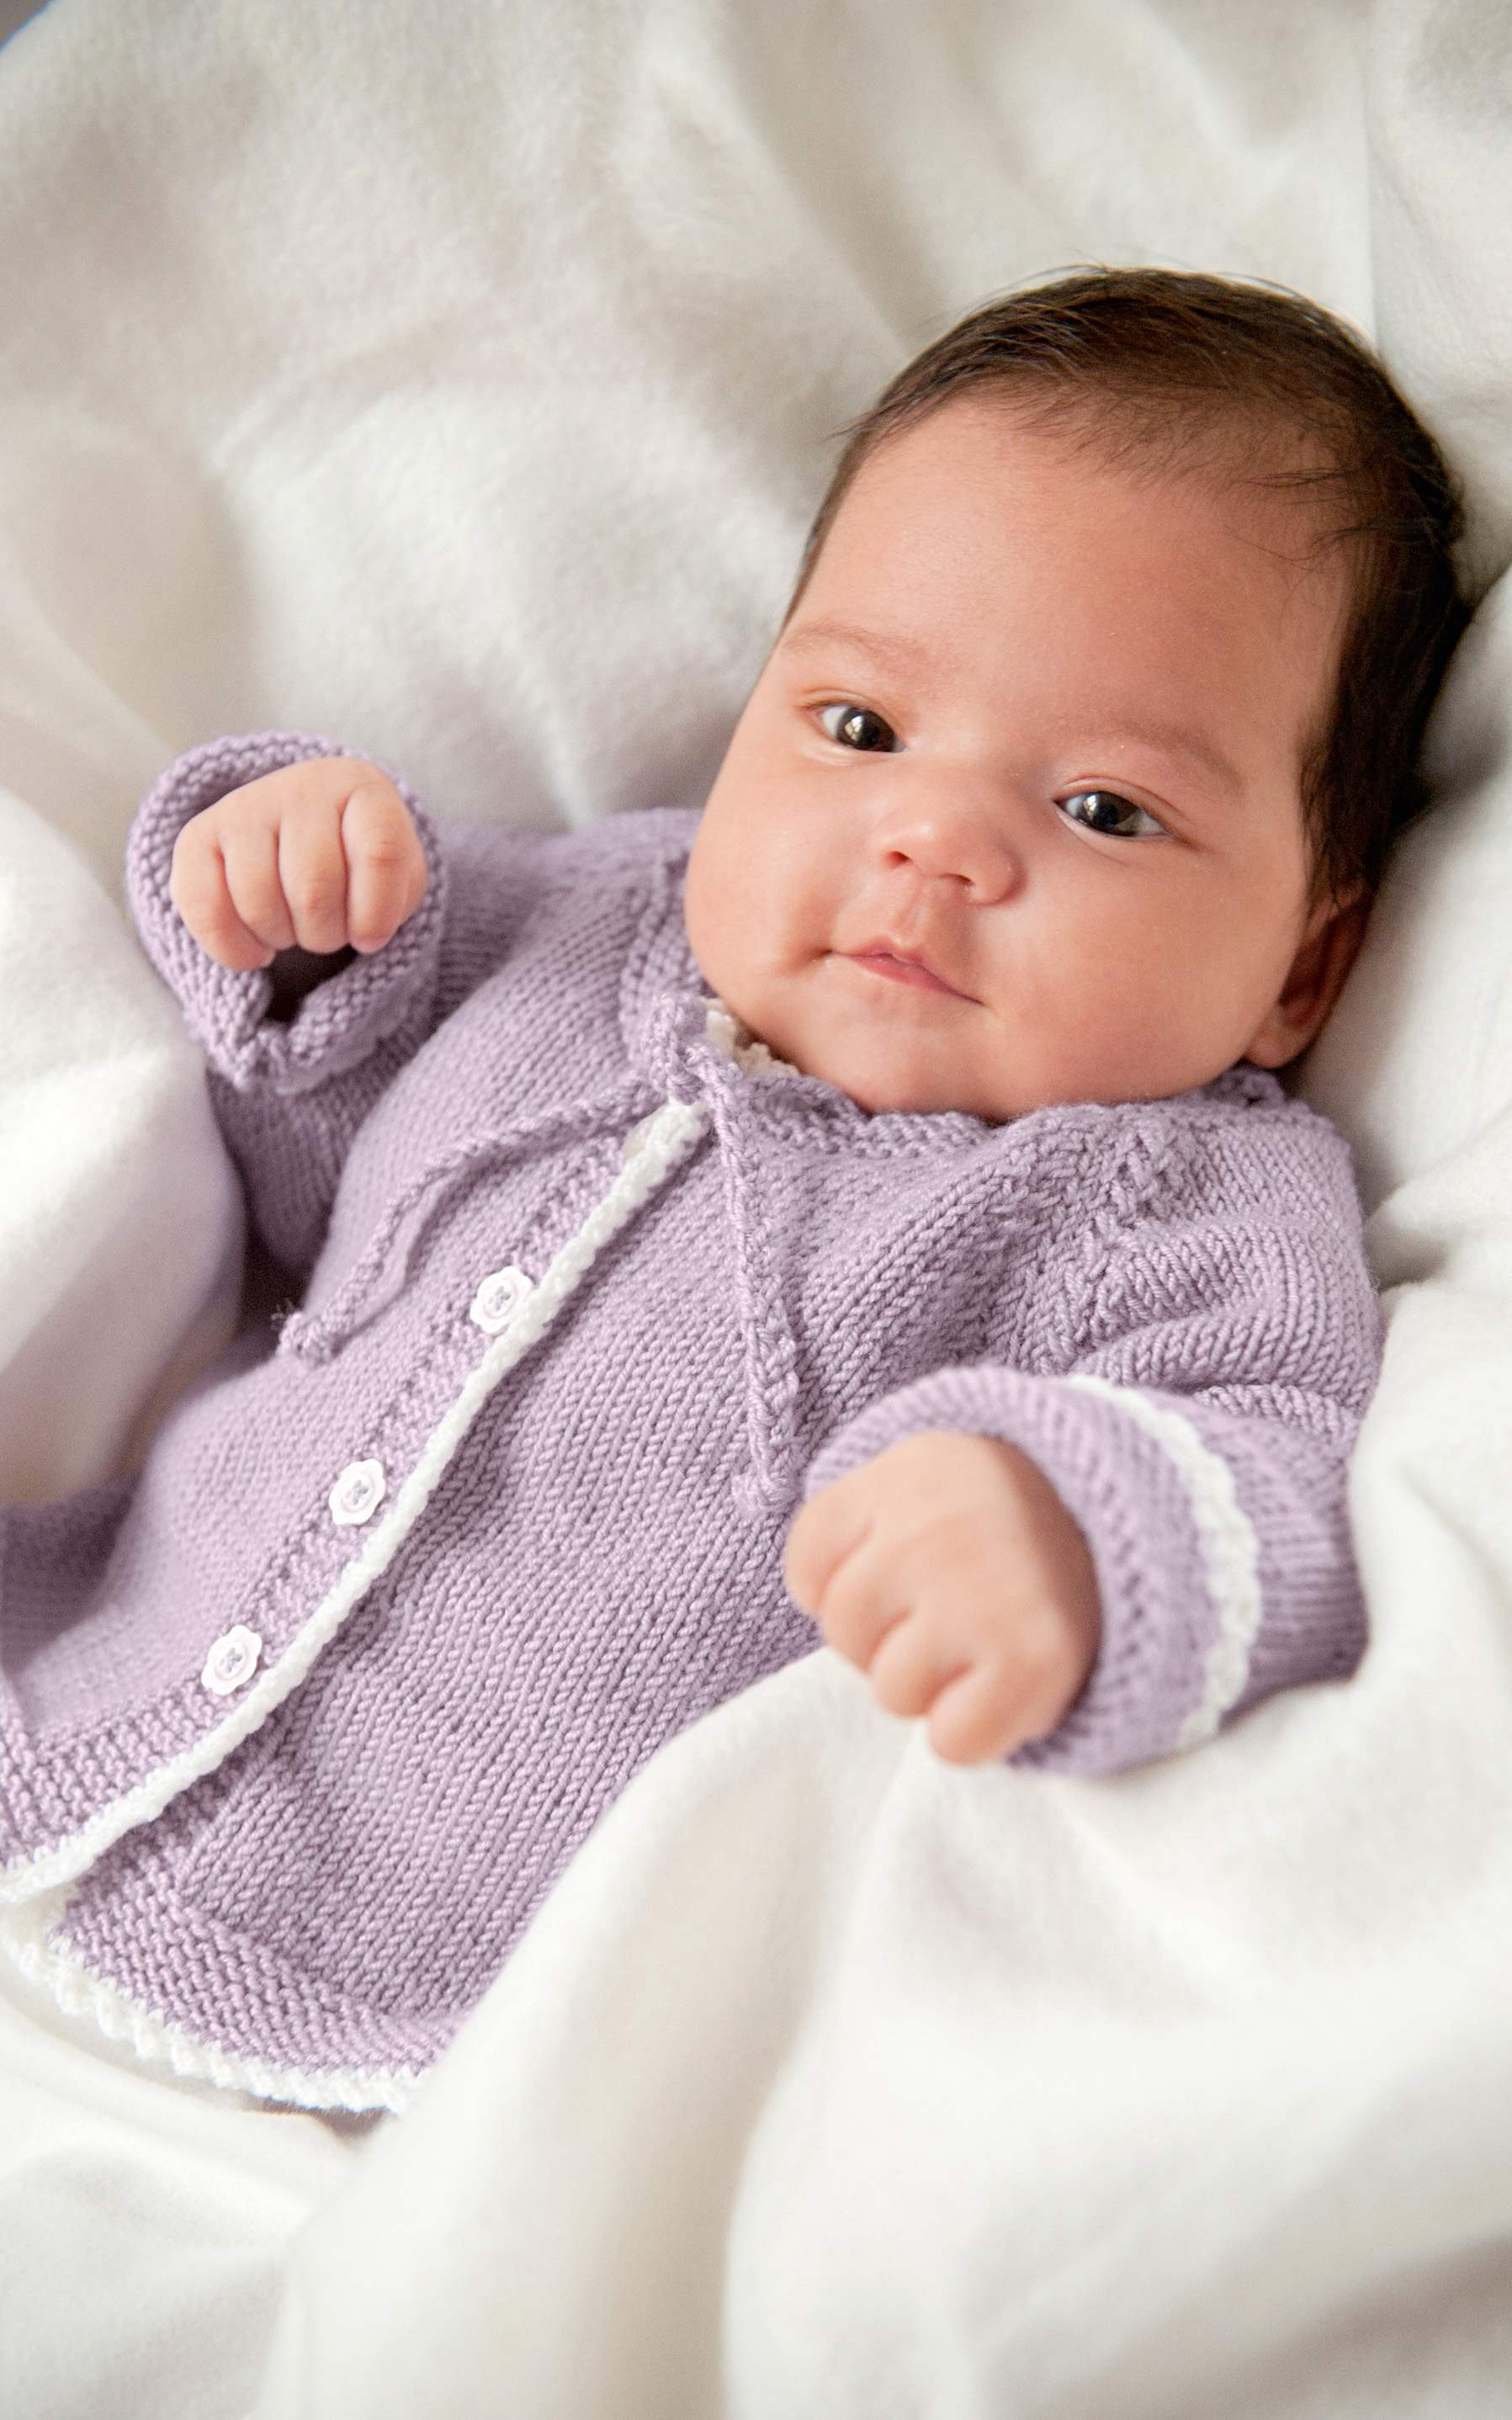 Baby Jacke mit Häkelrand - Strickset von LANA GROSSA jetzt online kaufen bei OONIQUE